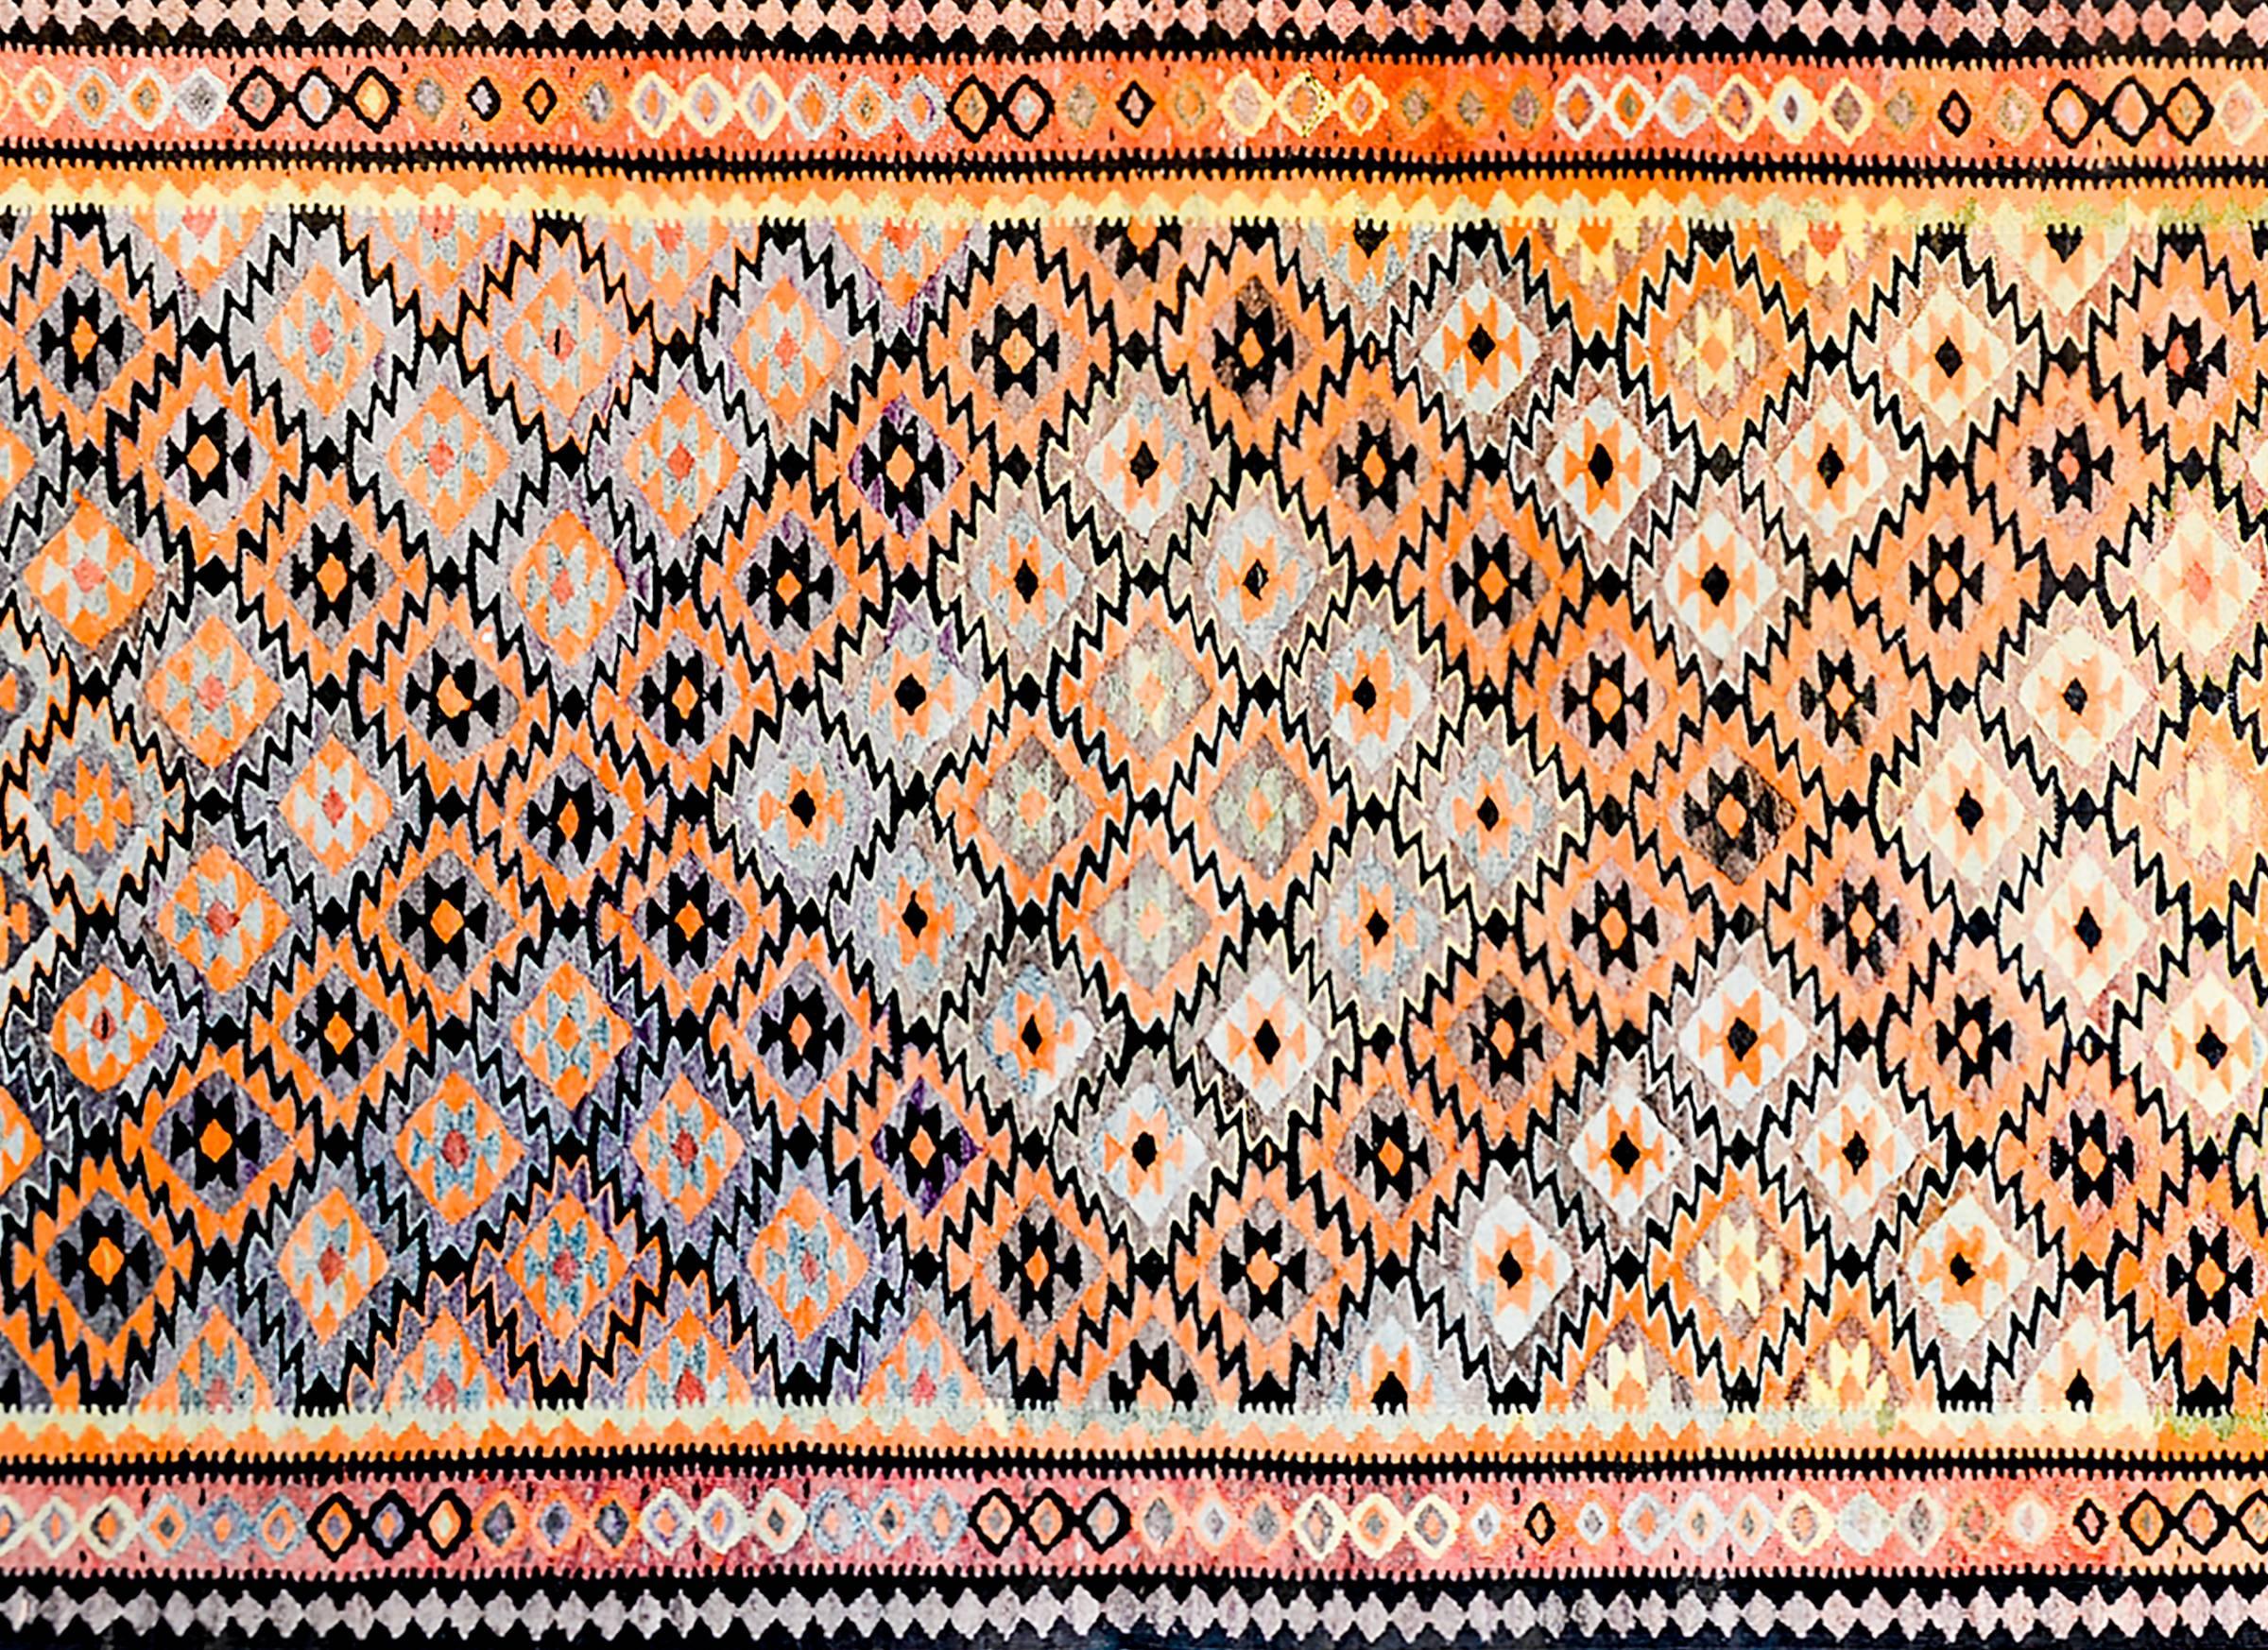 Ein erstaunlicher persischer Qazvin-Kilim-Teppich aus der Mitte des 20. Jahrhunderts mit einem mehrfarbigen Rautenmuster, das so gewebt ist, dass ein größeres Rautenmuster aus orangefarbenen, lilafarbenen, rückseitigen und naturfarbenen Diamanten